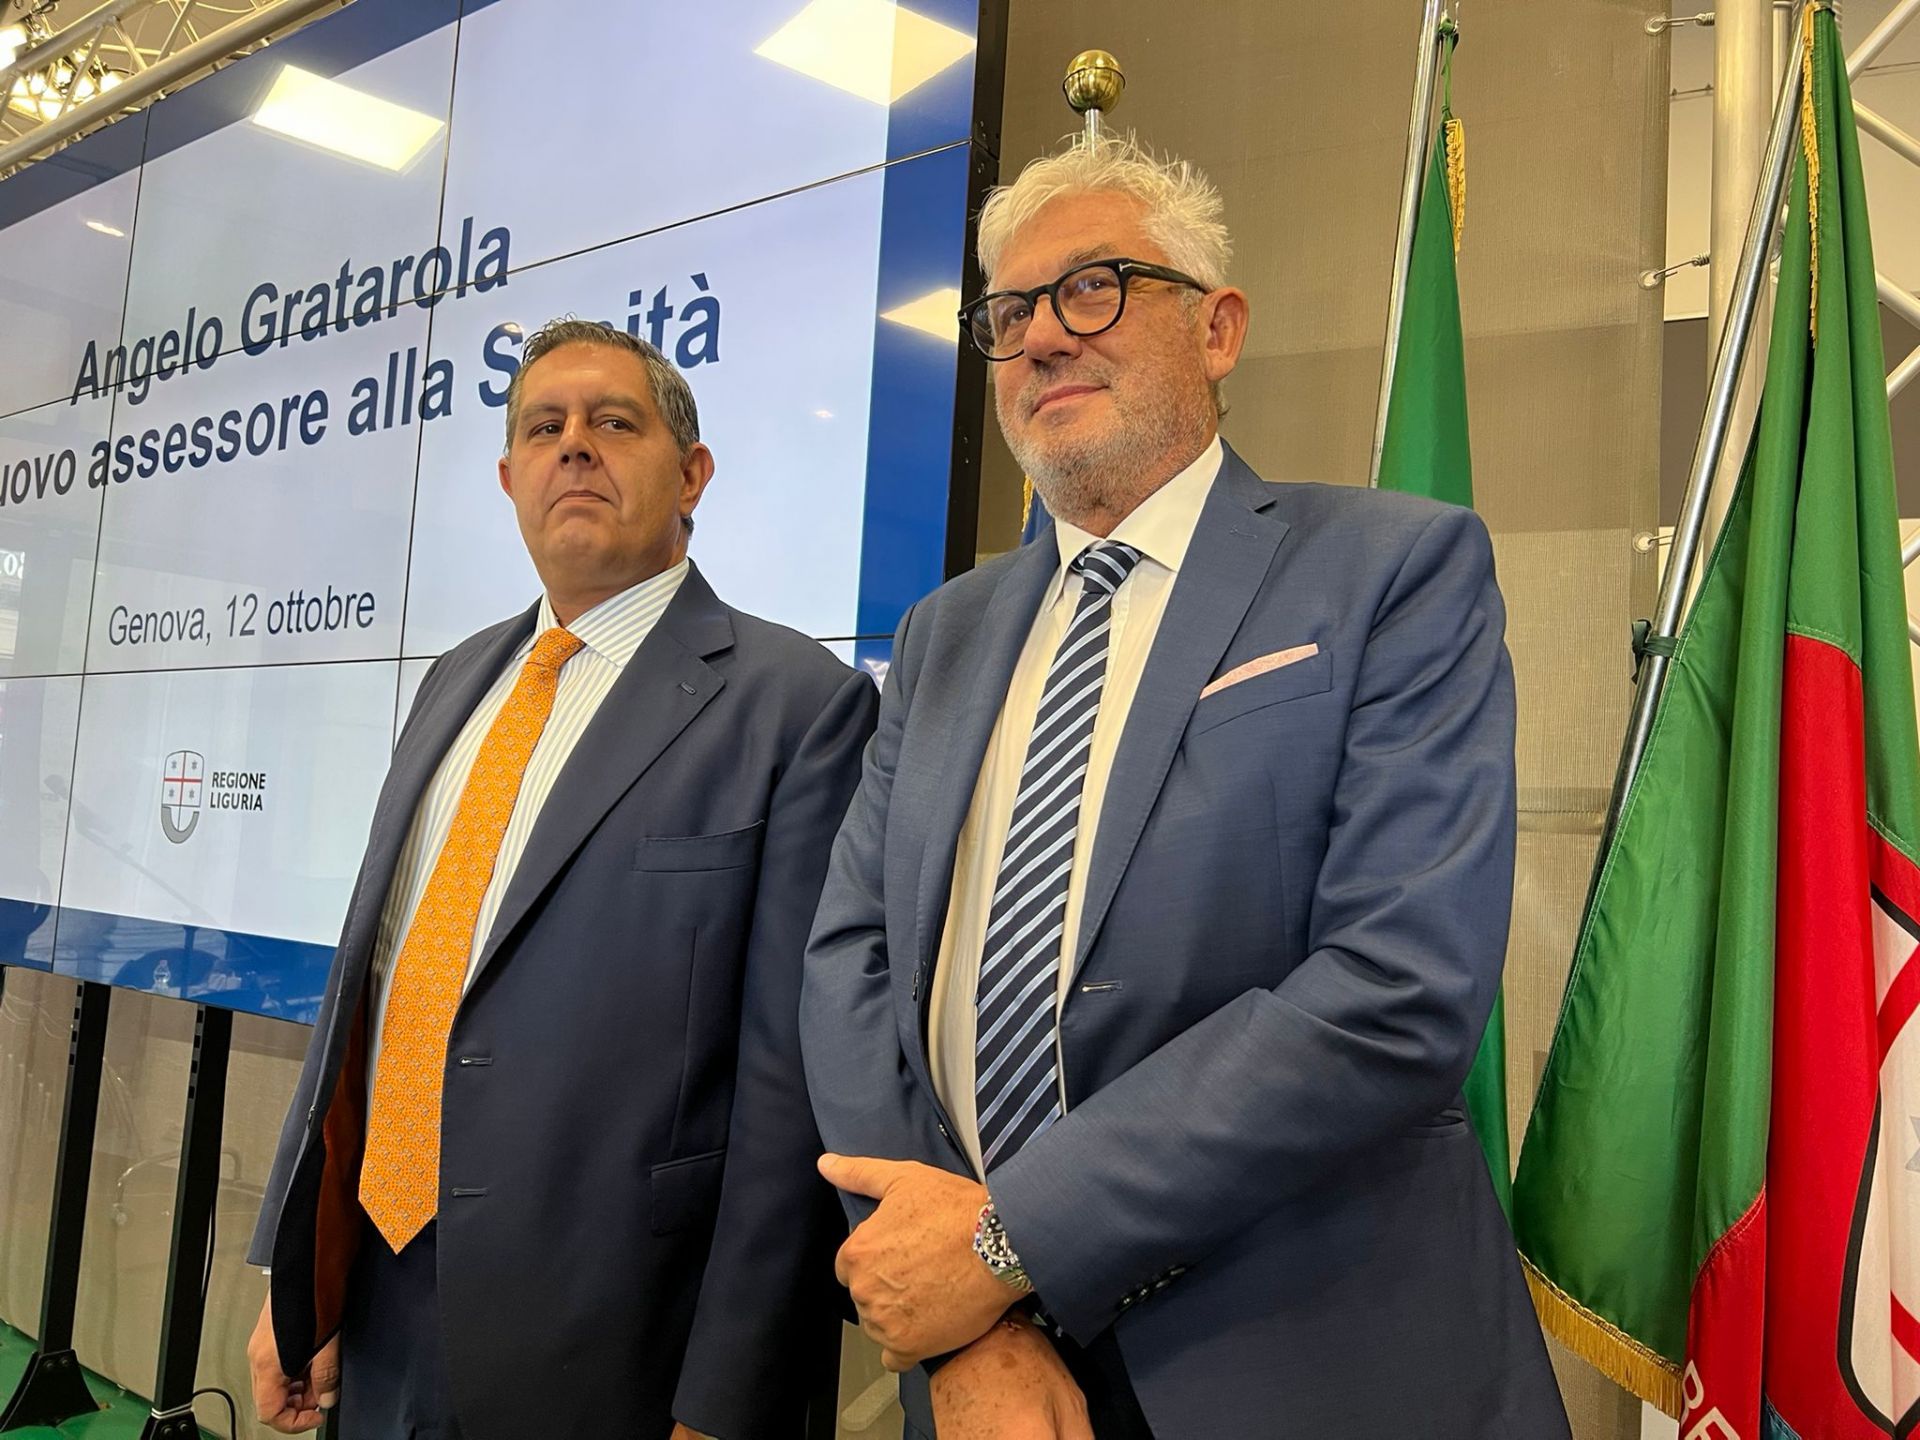 Liguria, il nuovo assessore alla sanità Gratarola cita Roosvelt: “Fai ciò che puoi con ciò che hai nel posto in cui sei”